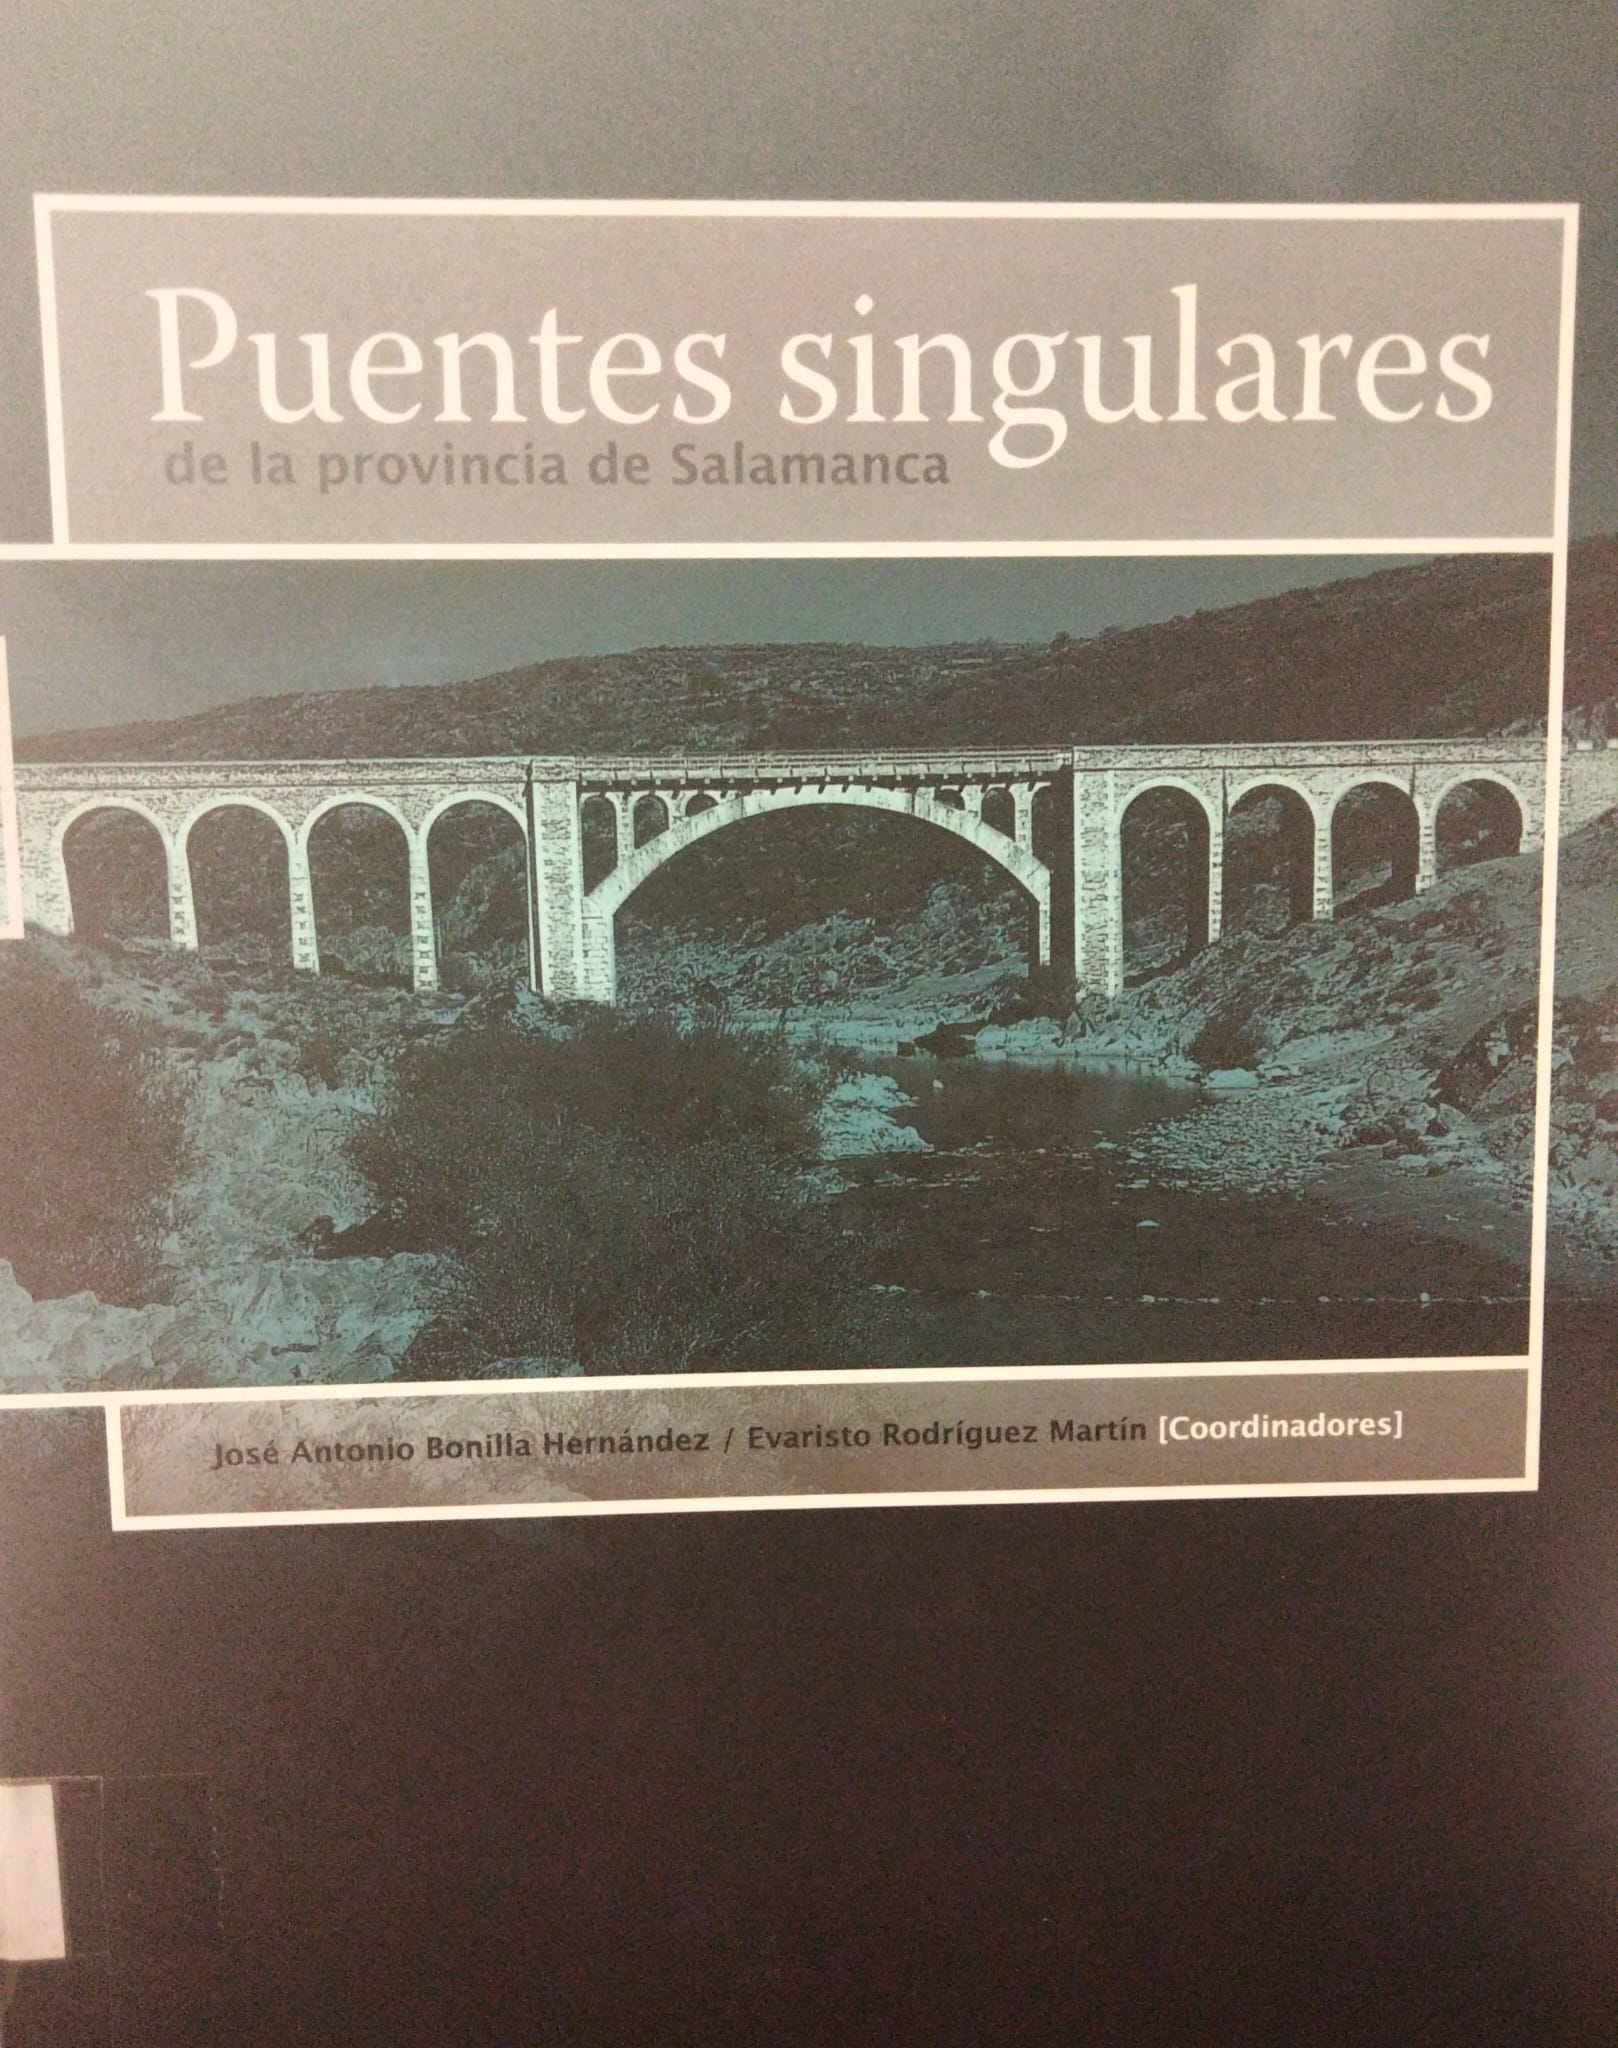 Imagen de portada del libro Puentes singulares de la provincia de Salamanca